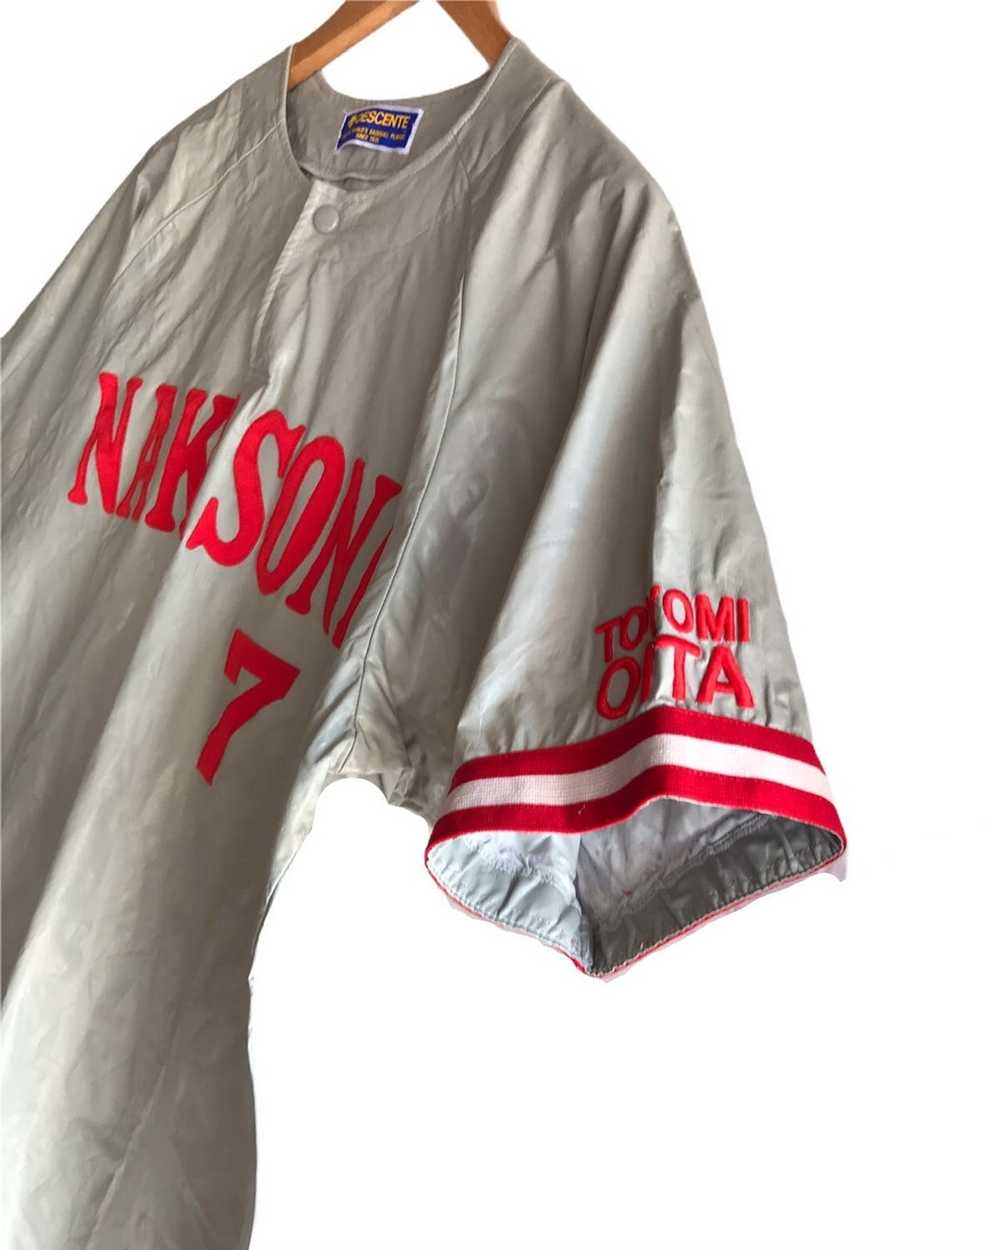 Japanese Brand Vintage Descente Jersey Baseball - image 4